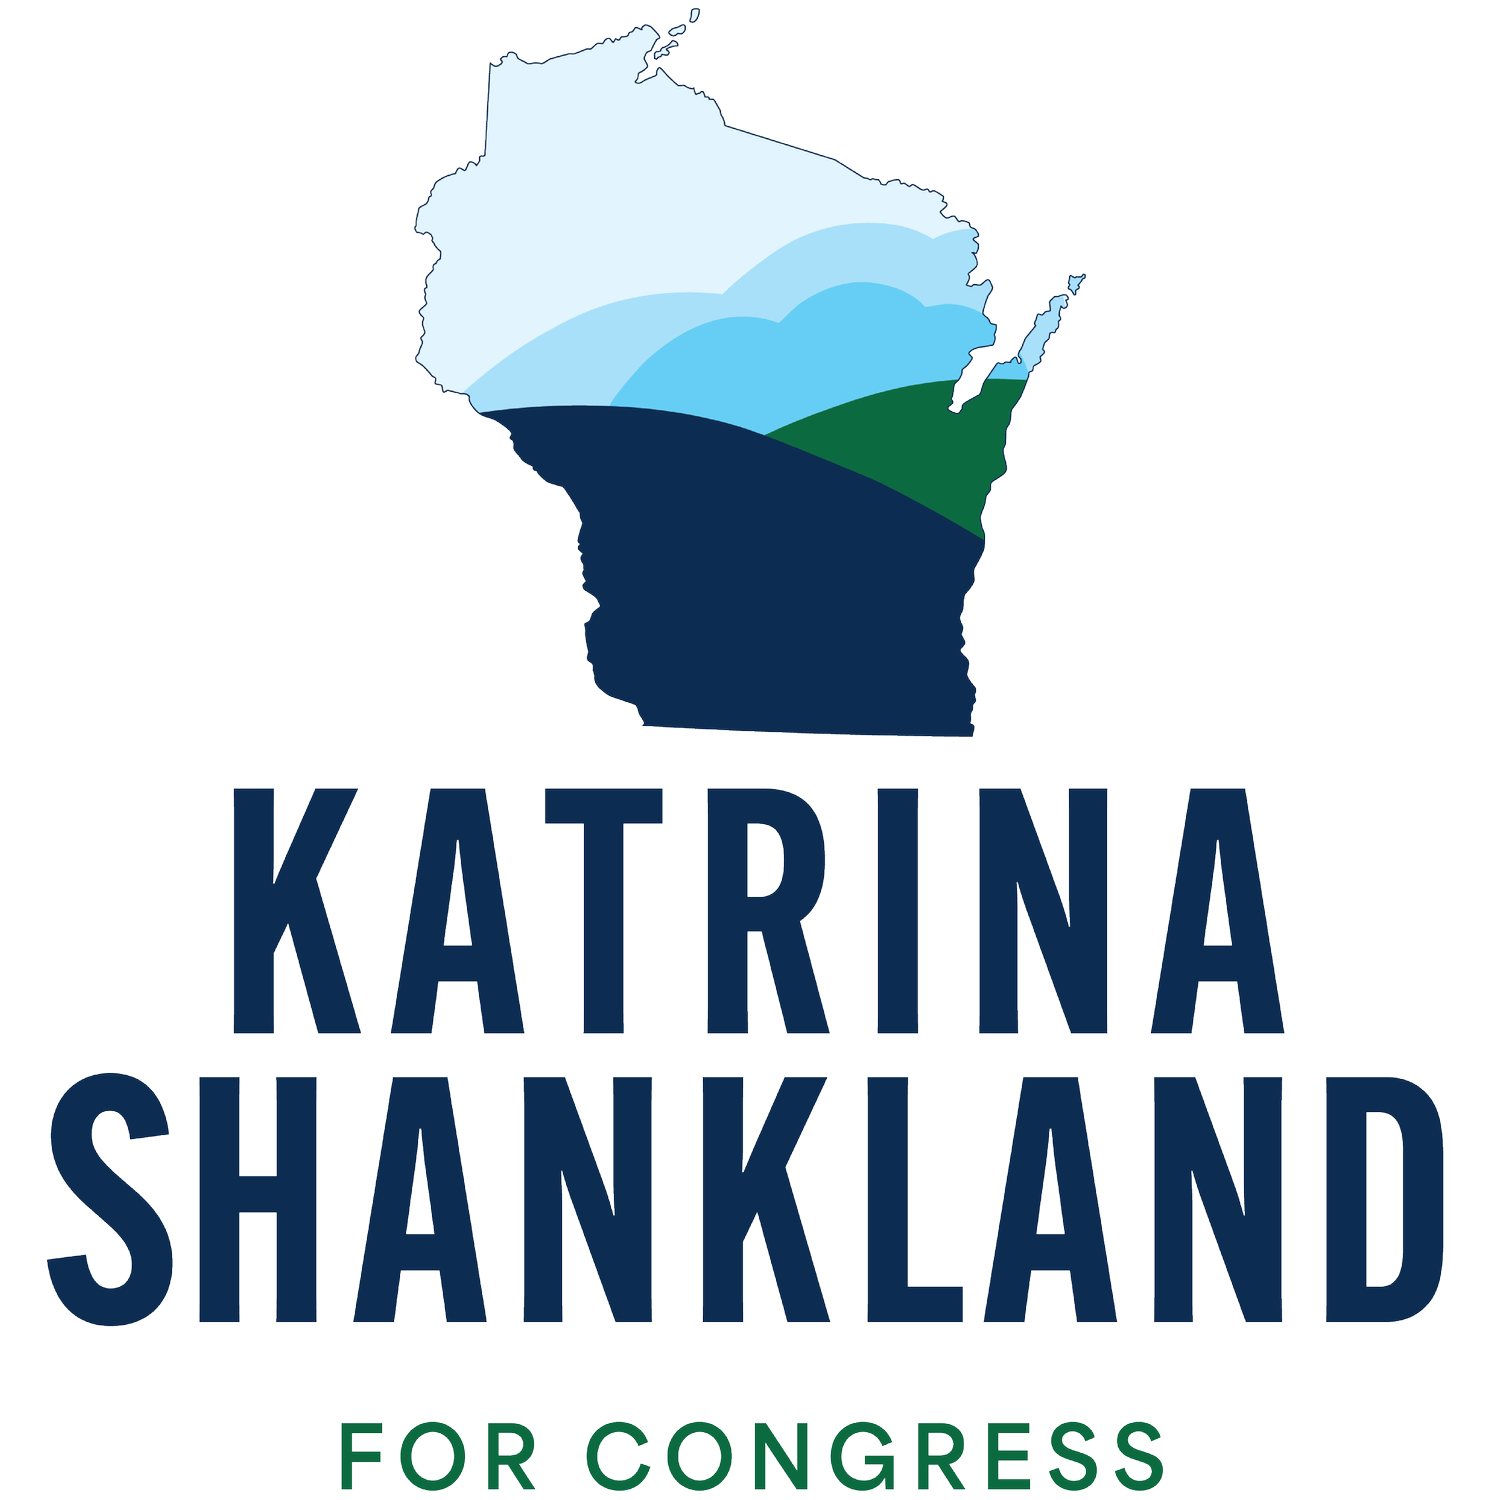  Katrina Shankland for Congress